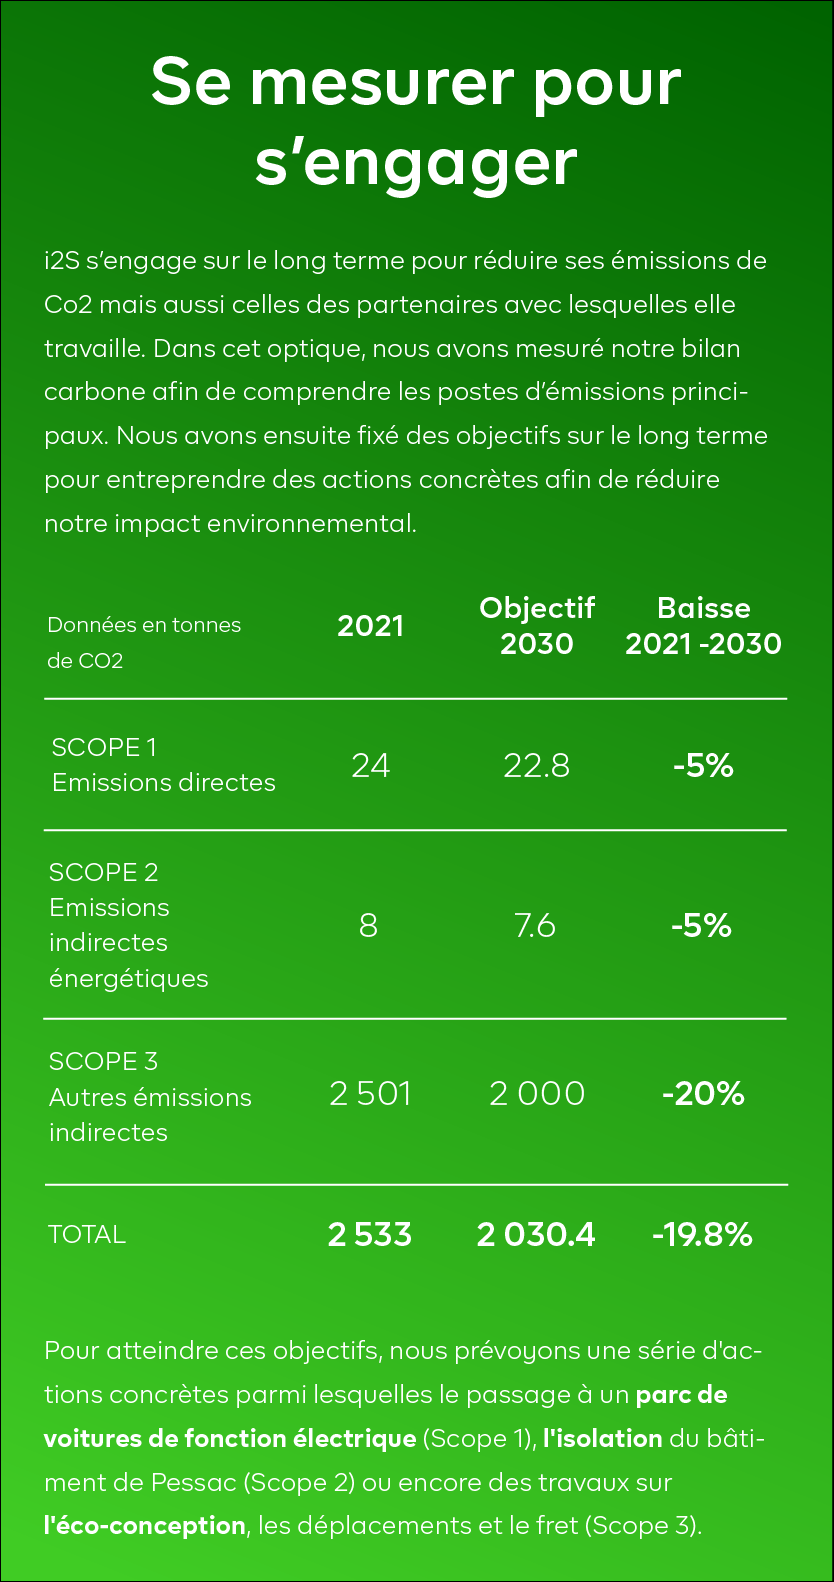 i2S a effectué un bilan carbone en 2021 et souhaite le faire passer de 2 533 tonnes de CO2 en 2021 à 2 030.4 tonnes en 2030 soit une baisse de 19.8% sur la période